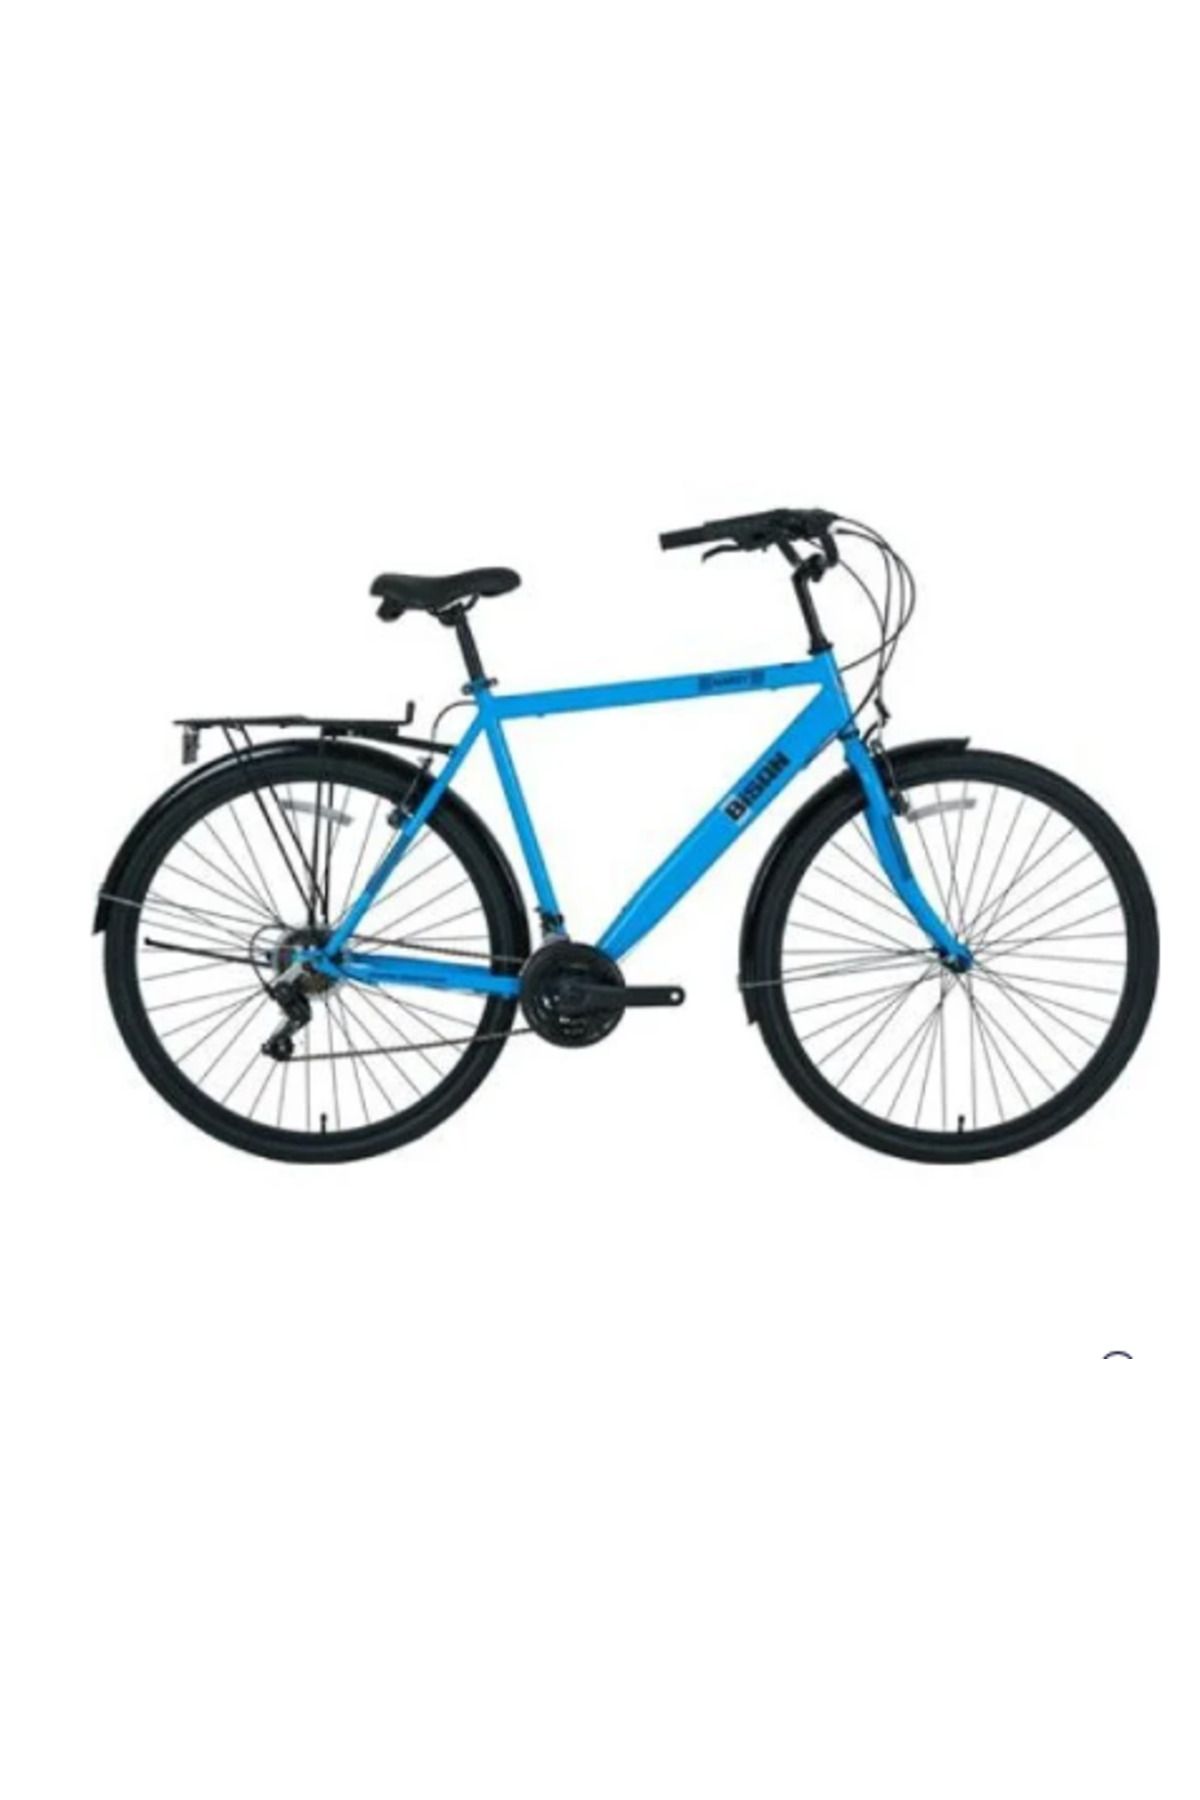 Bisan Hardy-23 28 Jant Bisiklet A.mavi Siyah Beyaz